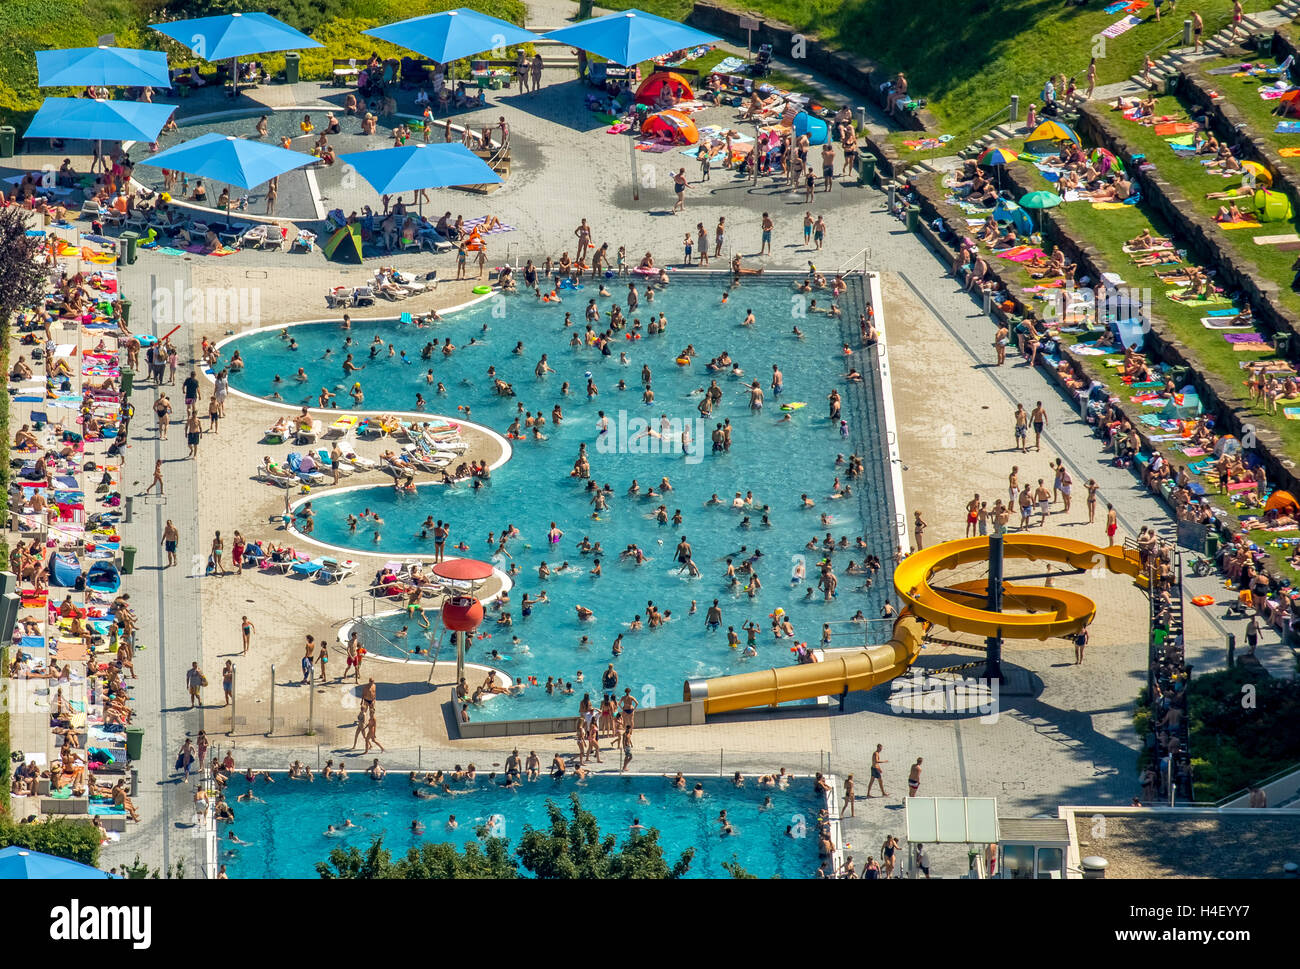 Vista aérea, la piscina, el nadador de piscina con un margen ondulado, césped, los bañistas en la piscina, Witten Annen, districto de Ruhr Foto de stock